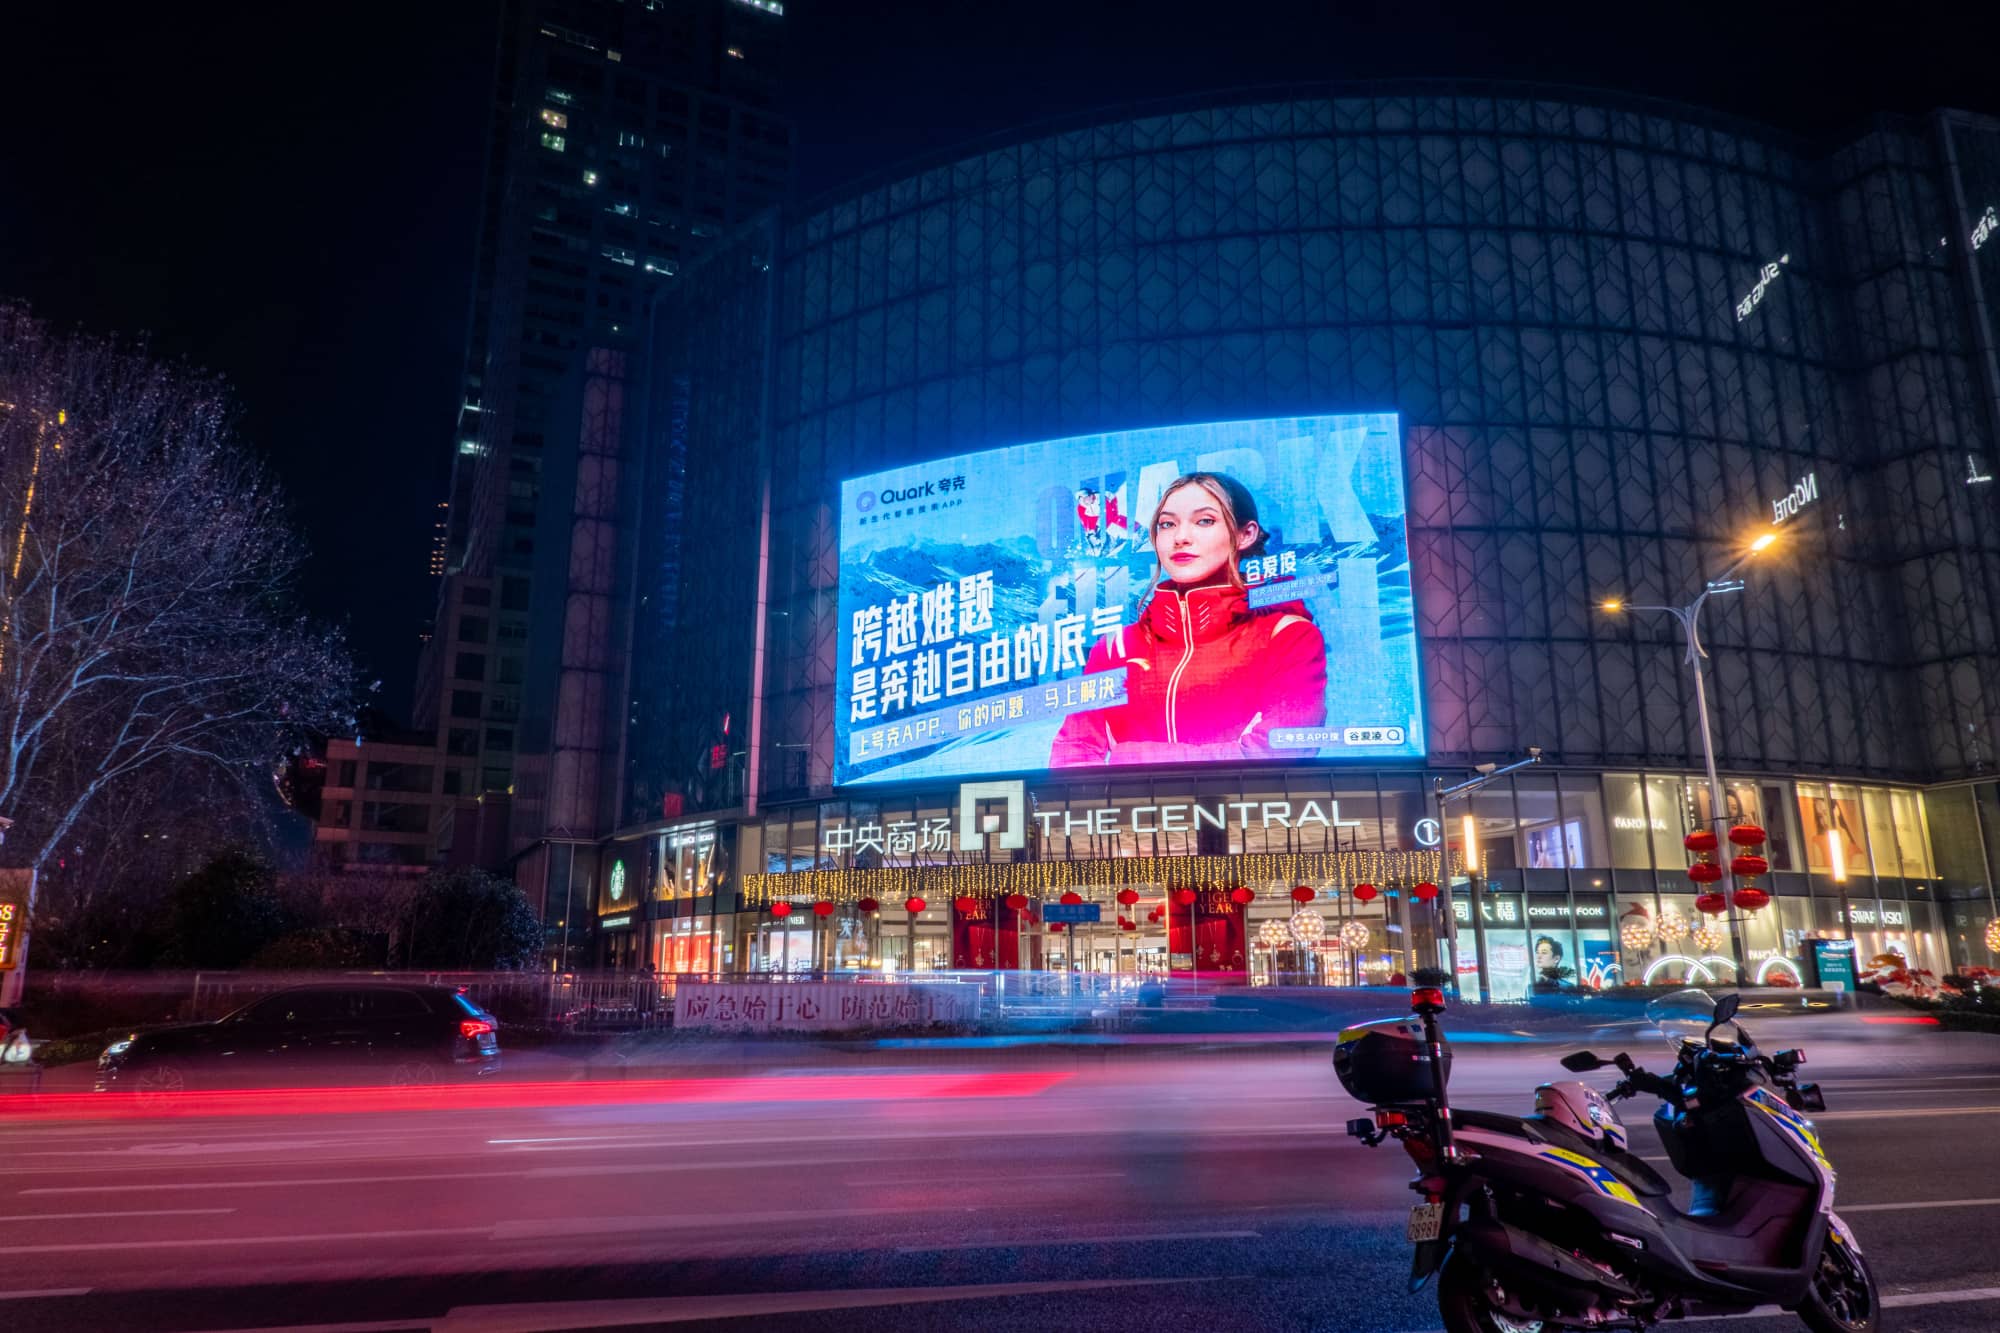 夸克app广告投放中央商场LED大屏-夜间效果图2